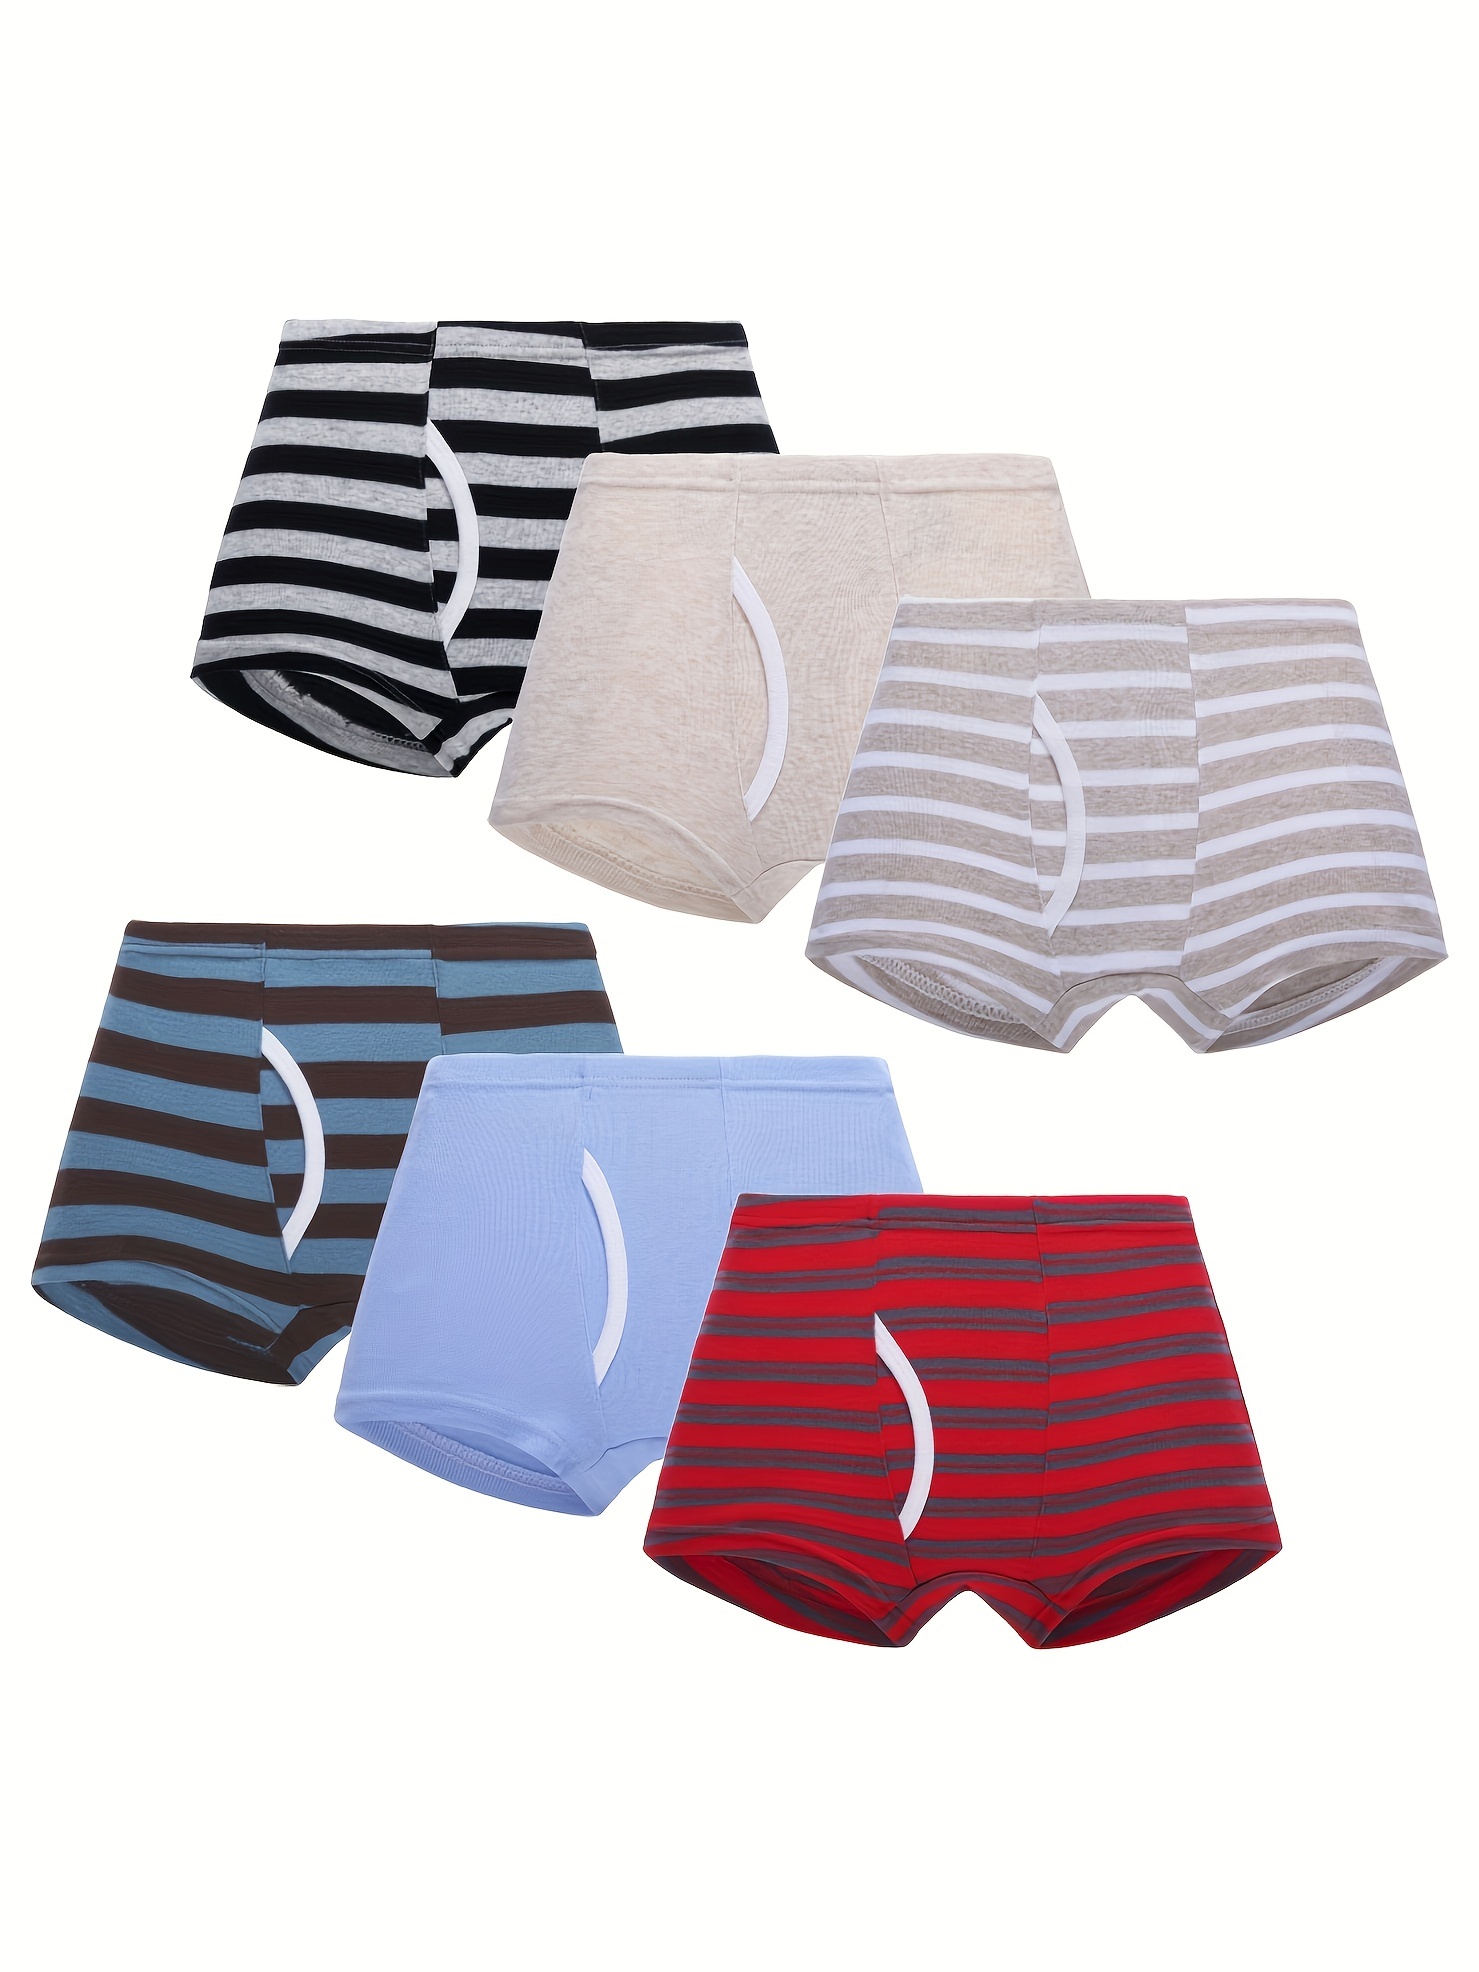  Toddler Boys Underwear, Pure Comfort 100% Cotton